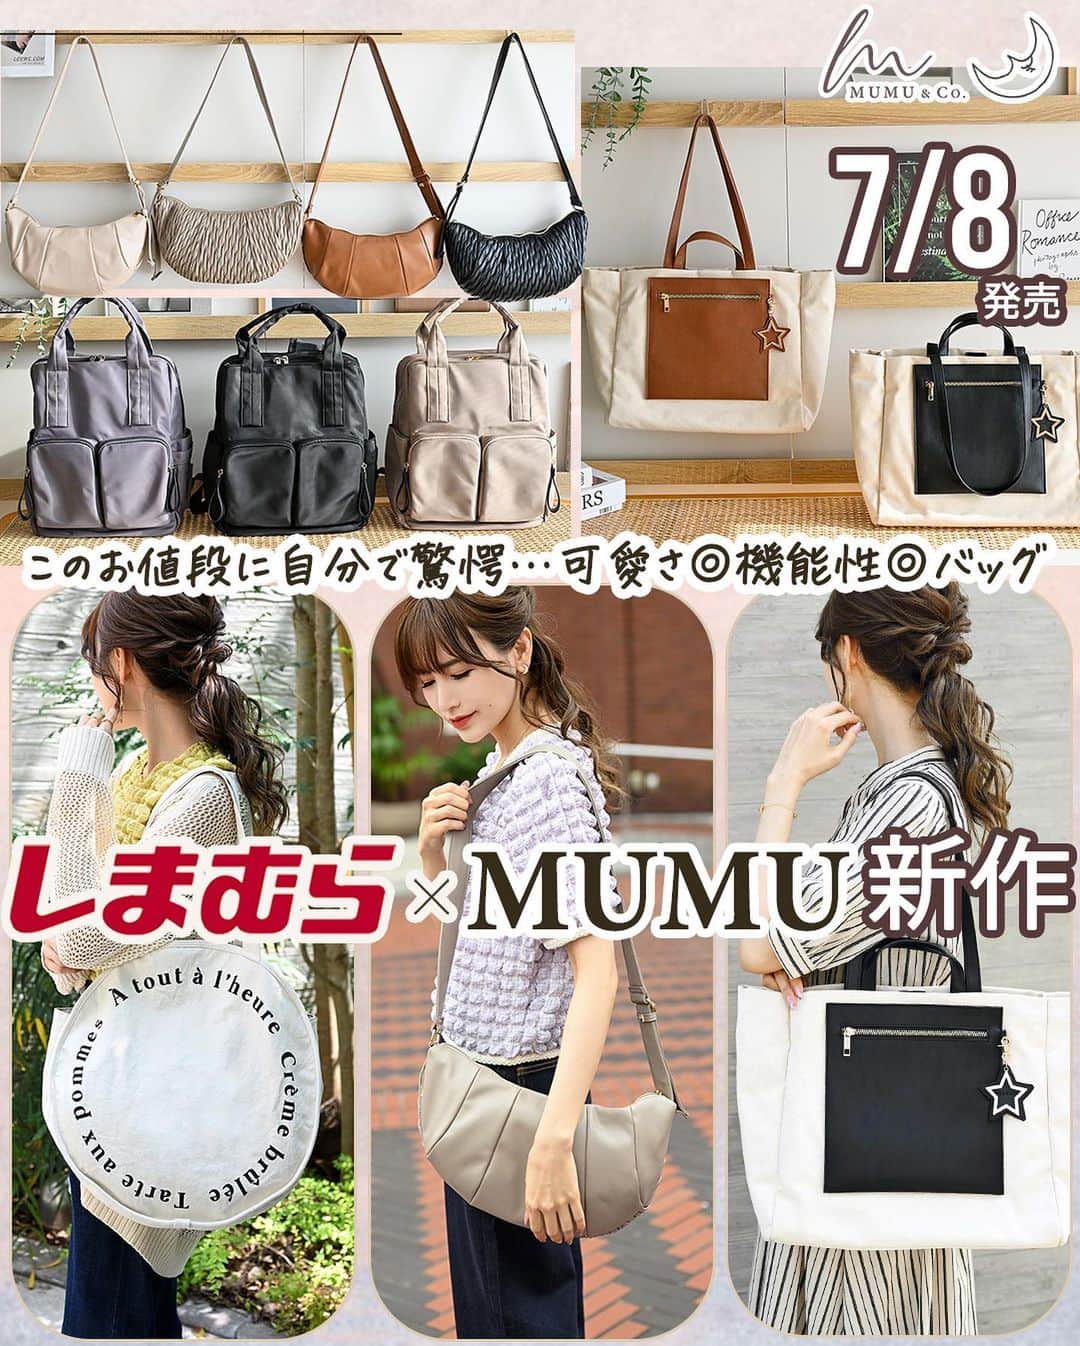 MUMUさんのインスタグラム写真 - (MUMUInstagram)「🥐 7月8日（土）に #しまむら @grshimamura ×MUMUコラボの新作バッグが発売* 実用性に優れた高見えアイテムがまたまた登場します。  より詳しい内容は是非ブログをご覧いただけたら嬉しいです🙇‍♀️ 文字数制限の都合上、全て記載できなかったためコメント欄へ続きます📝  ＜販売店について＞ ----- しまむら全店舗：7月8日（土）～ しまむらオンラインストア：7月9日（日）9時～ https://www.shop-shimamura.com/disp/itemlist/?q=MUMU&b=shimamura ※リュックのグレーのみ一部店舗およびオンラインストアで発売。 -----  ●クロワッサン型ショルダーバッグ 税込1,969円 【品番】 アイボリー（中白）：346-0564 グレー（中灰）：346-0566 ブラック（中黒）：346-0569 ブラウン（中茶）：346-0570 【サイズ】 横幅38cm×高さ21cm×マチ3.5cm 【重量】 320g 【ポケット】 4個  機能たっぷり！可愛さ超弩級のショルダーバッグが完成！ しかもなんと税込1,969円と破格のアイテム。 「チョコ掛けしたような編み編みクロワッサン風」の面と、 「オーソドックスなクロワッサン風」の2面で持てる楽しい仕様に* 素材にはなめらかな合皮素材を使い、しっかりと高見えするバッグに！ こだわりポイントは見た目の可愛さだけではありません！ MUMU&Co.らしく、機能性にも優れたアイテムに。 バッグ外側にはファスナー付き隠しポケットを設けました。 こちらはバッグの本体に繋がっておらず、独立したポケットになっているので、貴重品やスマホなどの収納にピッタリ◎ メイン収納はファスナーで開閉。 掴みやすいゴールドの引き手もポイント。 税込1,969円とプチプラですが、もちろんしっかりとした裏地を付けました。 内側にはオープンポケットが2つと、ファスナー付きポケットが1つ。 小ぶりに見えて500mlペットボトルや長財布もすっぽり◎ ショルダーストラップは約3.5cmと太く設定し、荷重を分散し安定して持てる仕様に。 結び目を作って長さ調節をするタイプではなく、アジャスターで長さ調節ができるので使用感も快適。 使用している金具は全てリッチなゴールド金具に統一。 同時発売のスマホストラップとのセット使いもオススメ* 可愛さも実用性もコスパも兼ね備えた気分が上がるバッグです。  ●サークル多ポケットトートバッグ 税込1,969円 【品番】 アイボリー（中白）：343-0242 グレー（中灰）：343-0260 【サイズ】 横幅40cm×高さ40cm×マチ14.5cm 【重量】 450g 【ポケット】 8個  これまでありそうでなかった！ 特別な機能を盛りに！盛り込んだサークルトート。 コットンキャンバス素材を使用。 フロントにはぐるっとフランス語ロゴをプラス。 Crème brûlée Tarte aux pommes À tout à l'heure 持つだけで映えるデザインに仕上げました。 丸型バッグは可愛い反面、特殊な形状ゆえに使いにくい一面も…。 こちらのバッグはそんなストレスも解消してくれる作り！ 背面には使いやすさを考えた3つのポケットを配置。 縦型ポケットにはスマホや眼鏡など、 横型ポケットにはイヤホンやキーケース、ハンカチなど… 頻繁に出し入れする小物の収納にとっても便利！ 横型ポケットにはマグネットボタン付きで安心です。 持ち手はラクに肩掛けできる長めの仕様（約60cm）。 開口部にはマグネットボタン付き。 内装も細かく荷物を仕分けできる作りに。 内側には大きく分けて3つのお部屋が。 メインのお部屋にはオープンポケットが2つと、ファスナー付きポケットが1つ。 左右隣りあった２つのお部屋にはオープンポケットが各1つずつついています。 こちらのオープンポケットは横幅も縦幅もしっかりあり、同時発売の長財布も立てて収納可能です◎ 仕切りがついているおかげでバッグの中身がごちゃつかない♪ 丸型バッグは形状の特性上、中の荷物が横倒しになりがちですが、2つ並んだお部屋を活用すれば折り畳み傘やペットボトルなど、倒したくない荷物を立てたままキープも可能です。 マチはたっぷり14.5cm。 500mlのペットボトルや長財布はもちろん、A4や14インチノートPCも入ります。 同時発売のポーチは4つすっぽり♪ しっかりとした裏地と底板付きで型崩れしにくく安心◎ ※防水機能はありません。 可愛いだけじゃない、荷物をスマートに仕分けられる前代未聞のプチプラバッグです。 . #プチプラコーデ #instagood #プチプラ #locari #instalike #服好きな人と繋がりたい #ootd #fashion #リュック #MUMU #流行 #しまむらコーデ #しまパト #トートバッグ #便利グッズ #grshimamura #しまむら購入品 #しまむら安心価格  #outfit #しまスタ #プチプラファッション #mumuニスタ #mumuコラボ #mumu春夏秋冬 #撥水機能」7月7日 19時59分 - mumudesukamumudesuyo